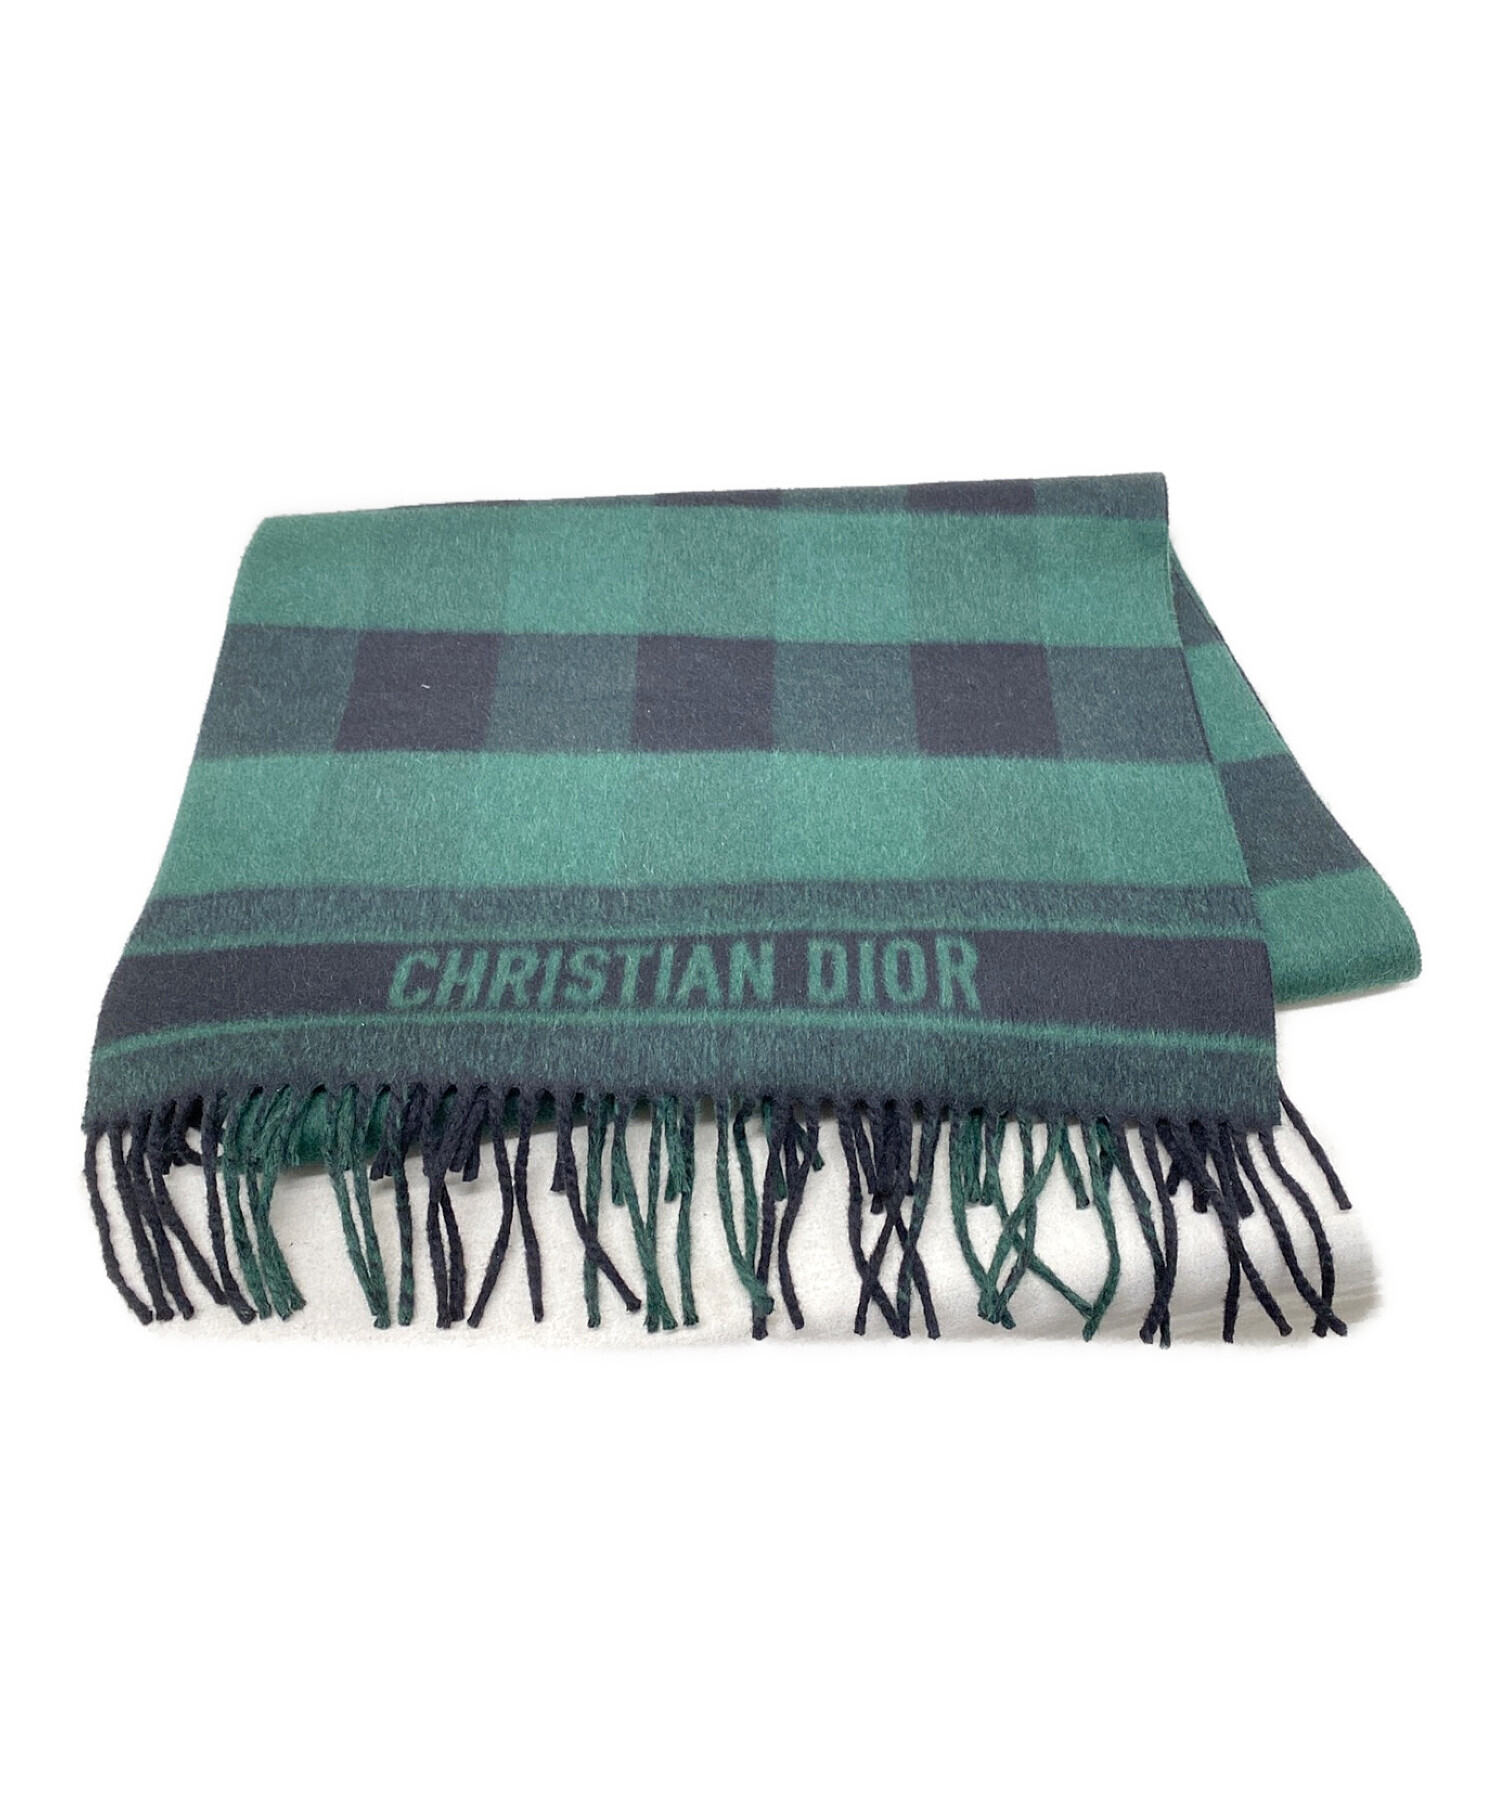 Christian Dior (クリスチャン ディオール) ブロックチェックマフラー グリーン×ブラック